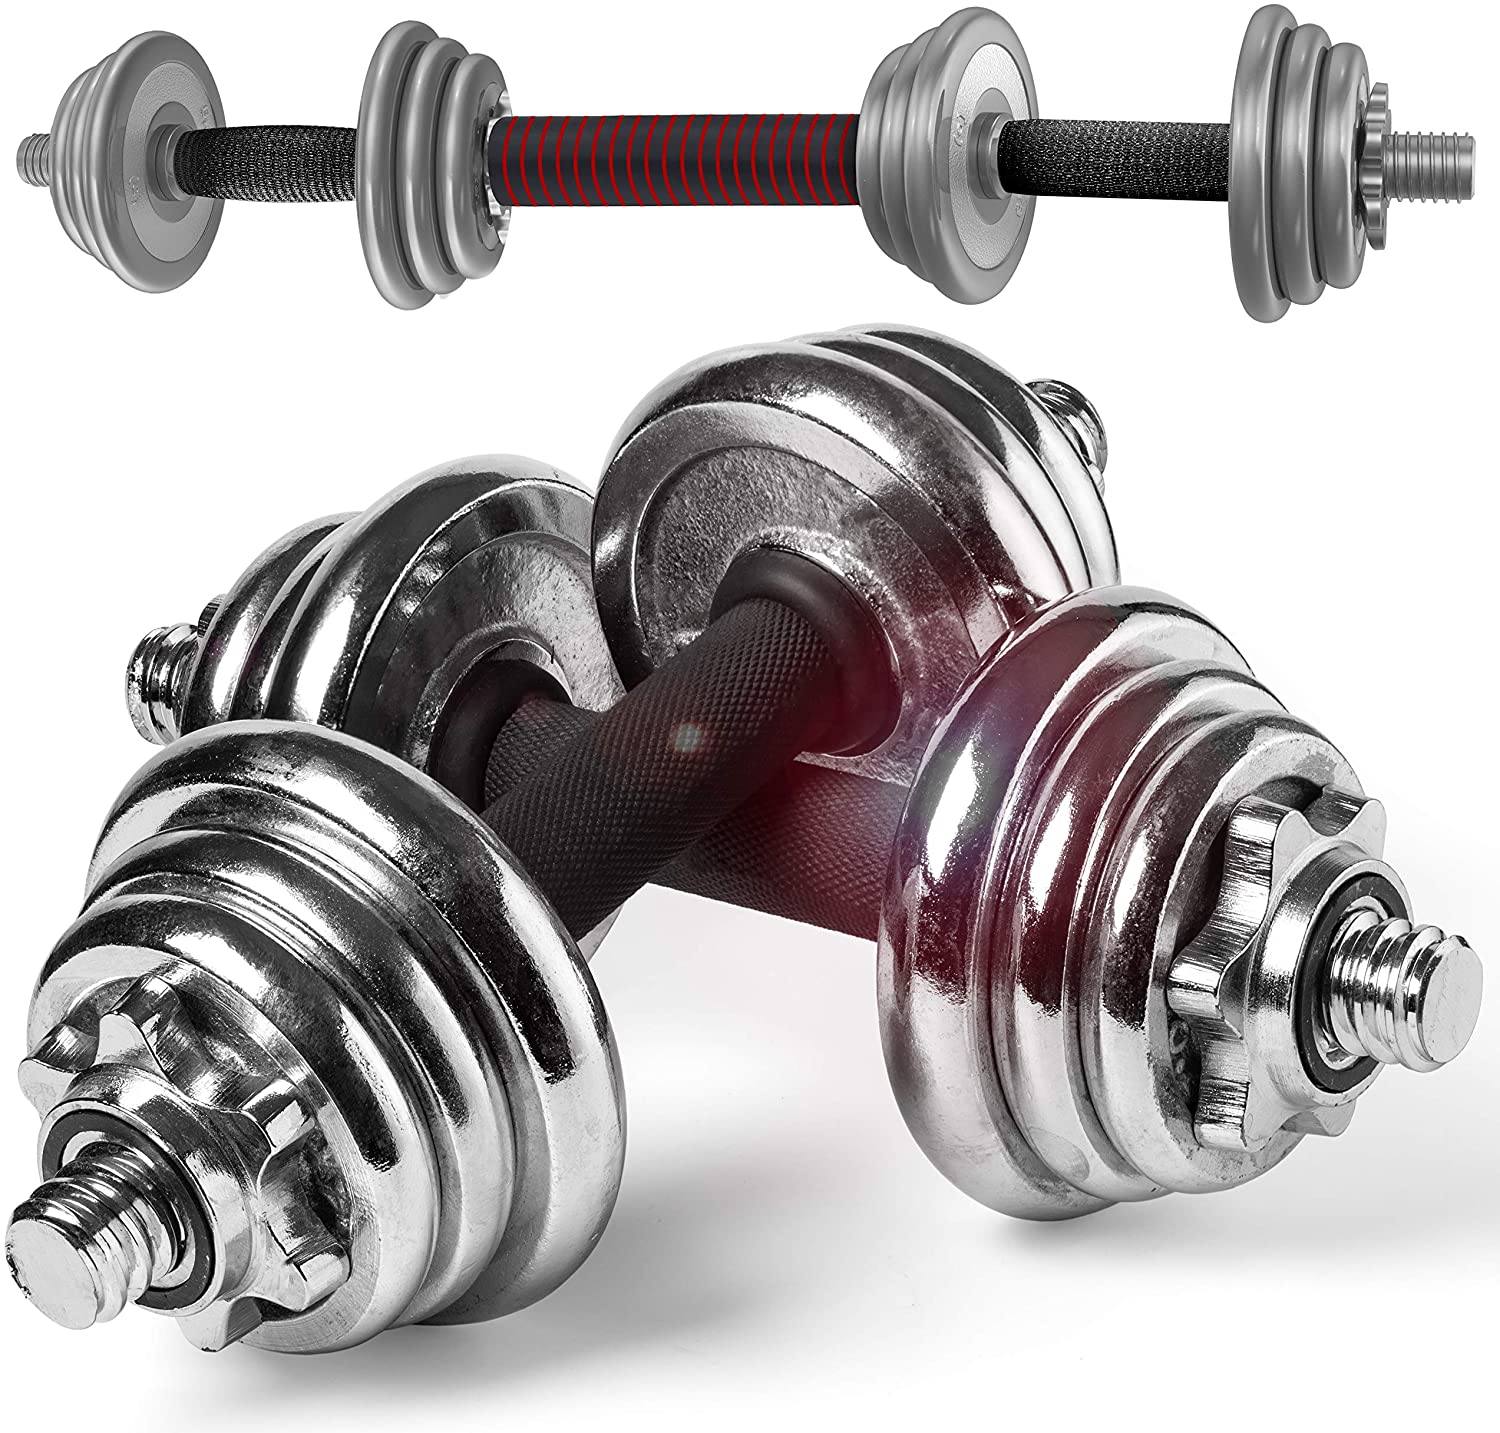 30 KG Cast Iron Dumbbells - Dumbbells, Strength Training